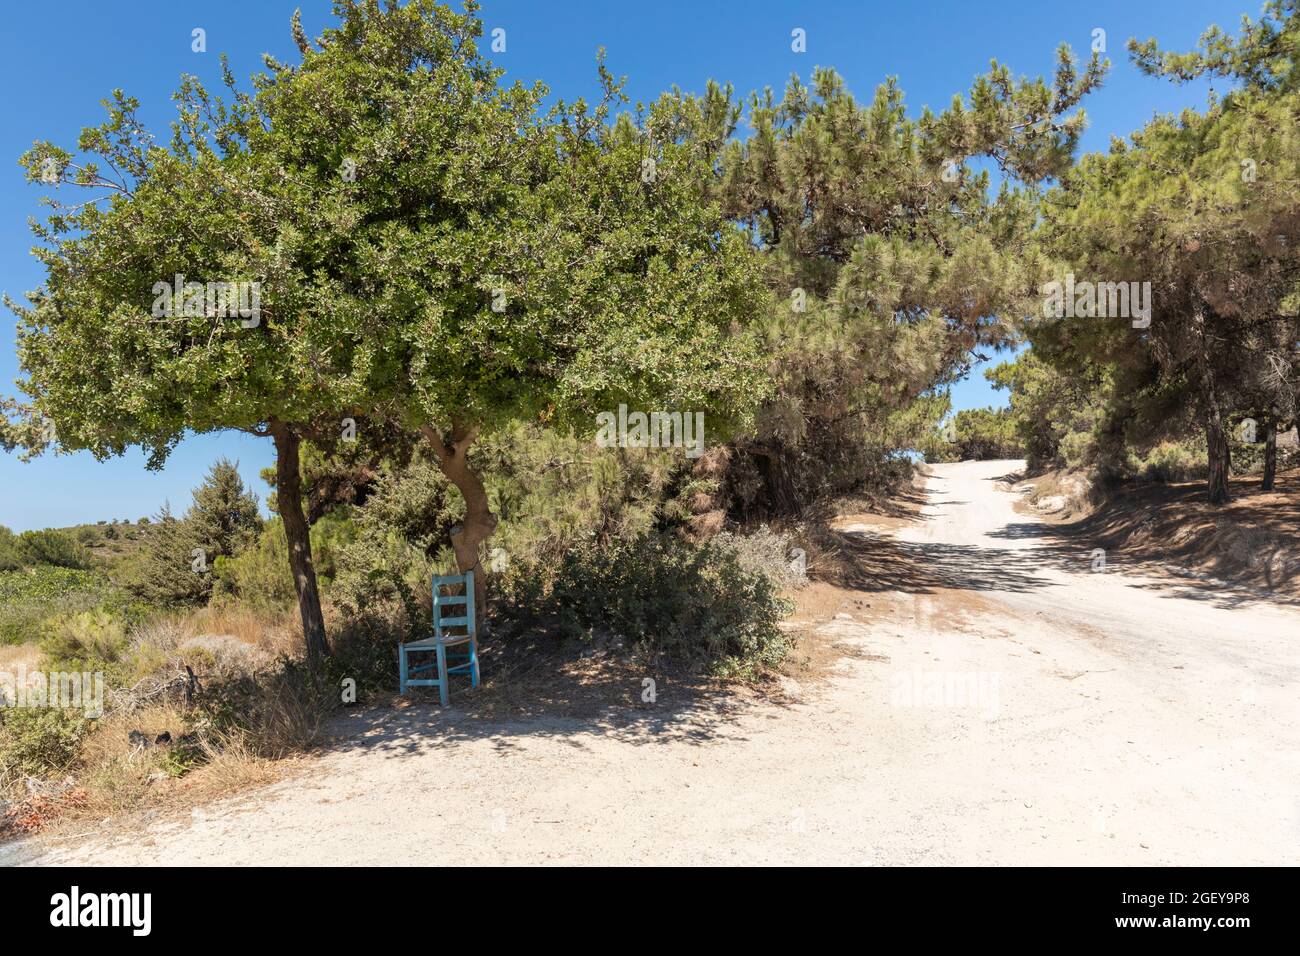 Landstraße in den Bergen von Kefalos mit einem blauen Stuhl im Schatten unter einem Baum. Abseits der ausgetretenen Pfade. Kos, Dodekanes, Griechenland Stockfoto